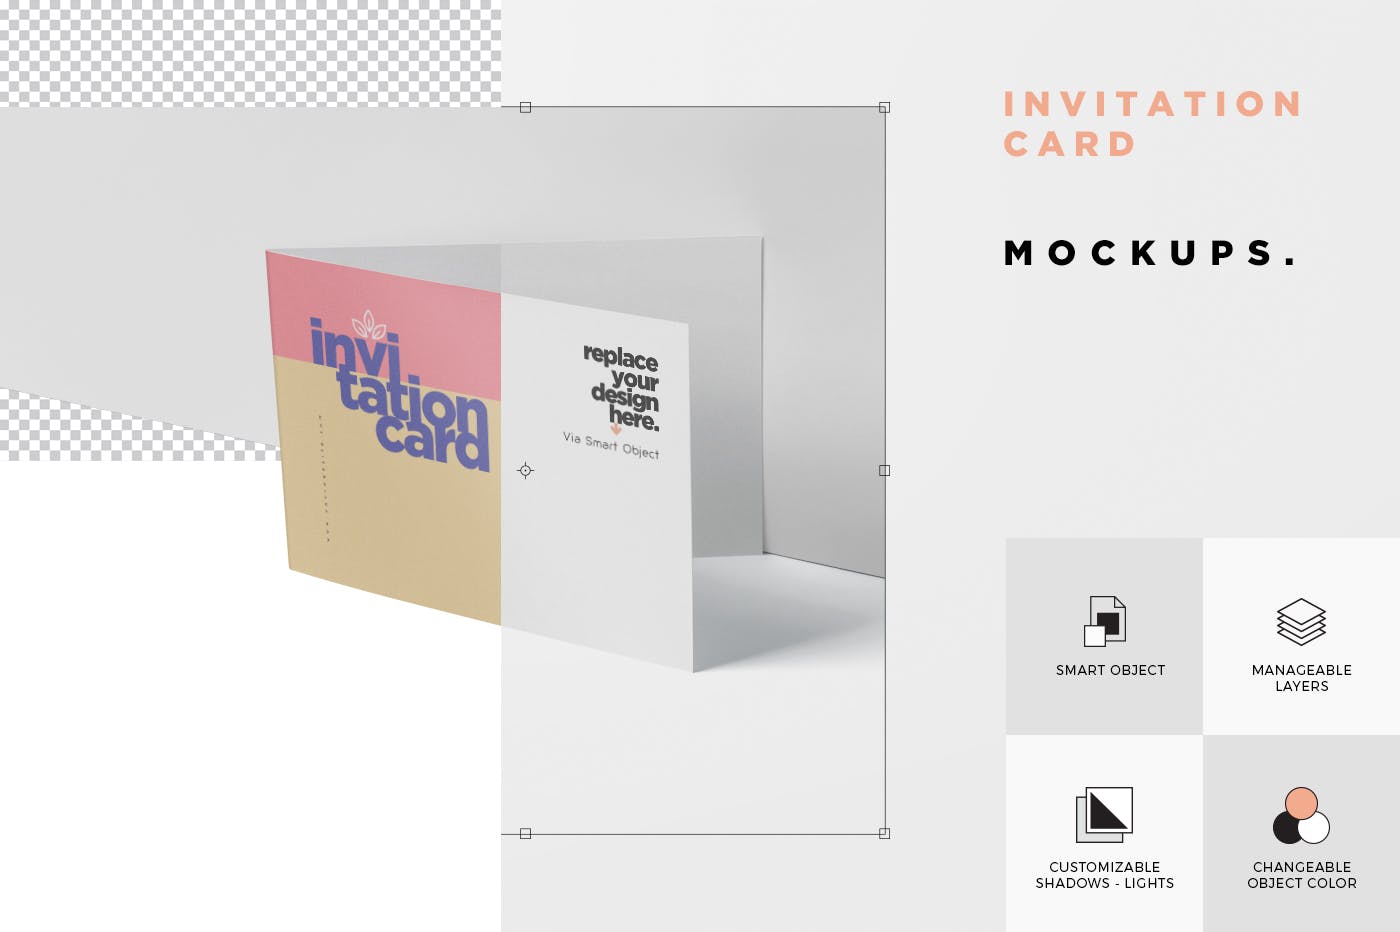 创意邀请卡/邀请函设计图样机第一素材精选 Invitation Card Mock-Up Set插图(5)